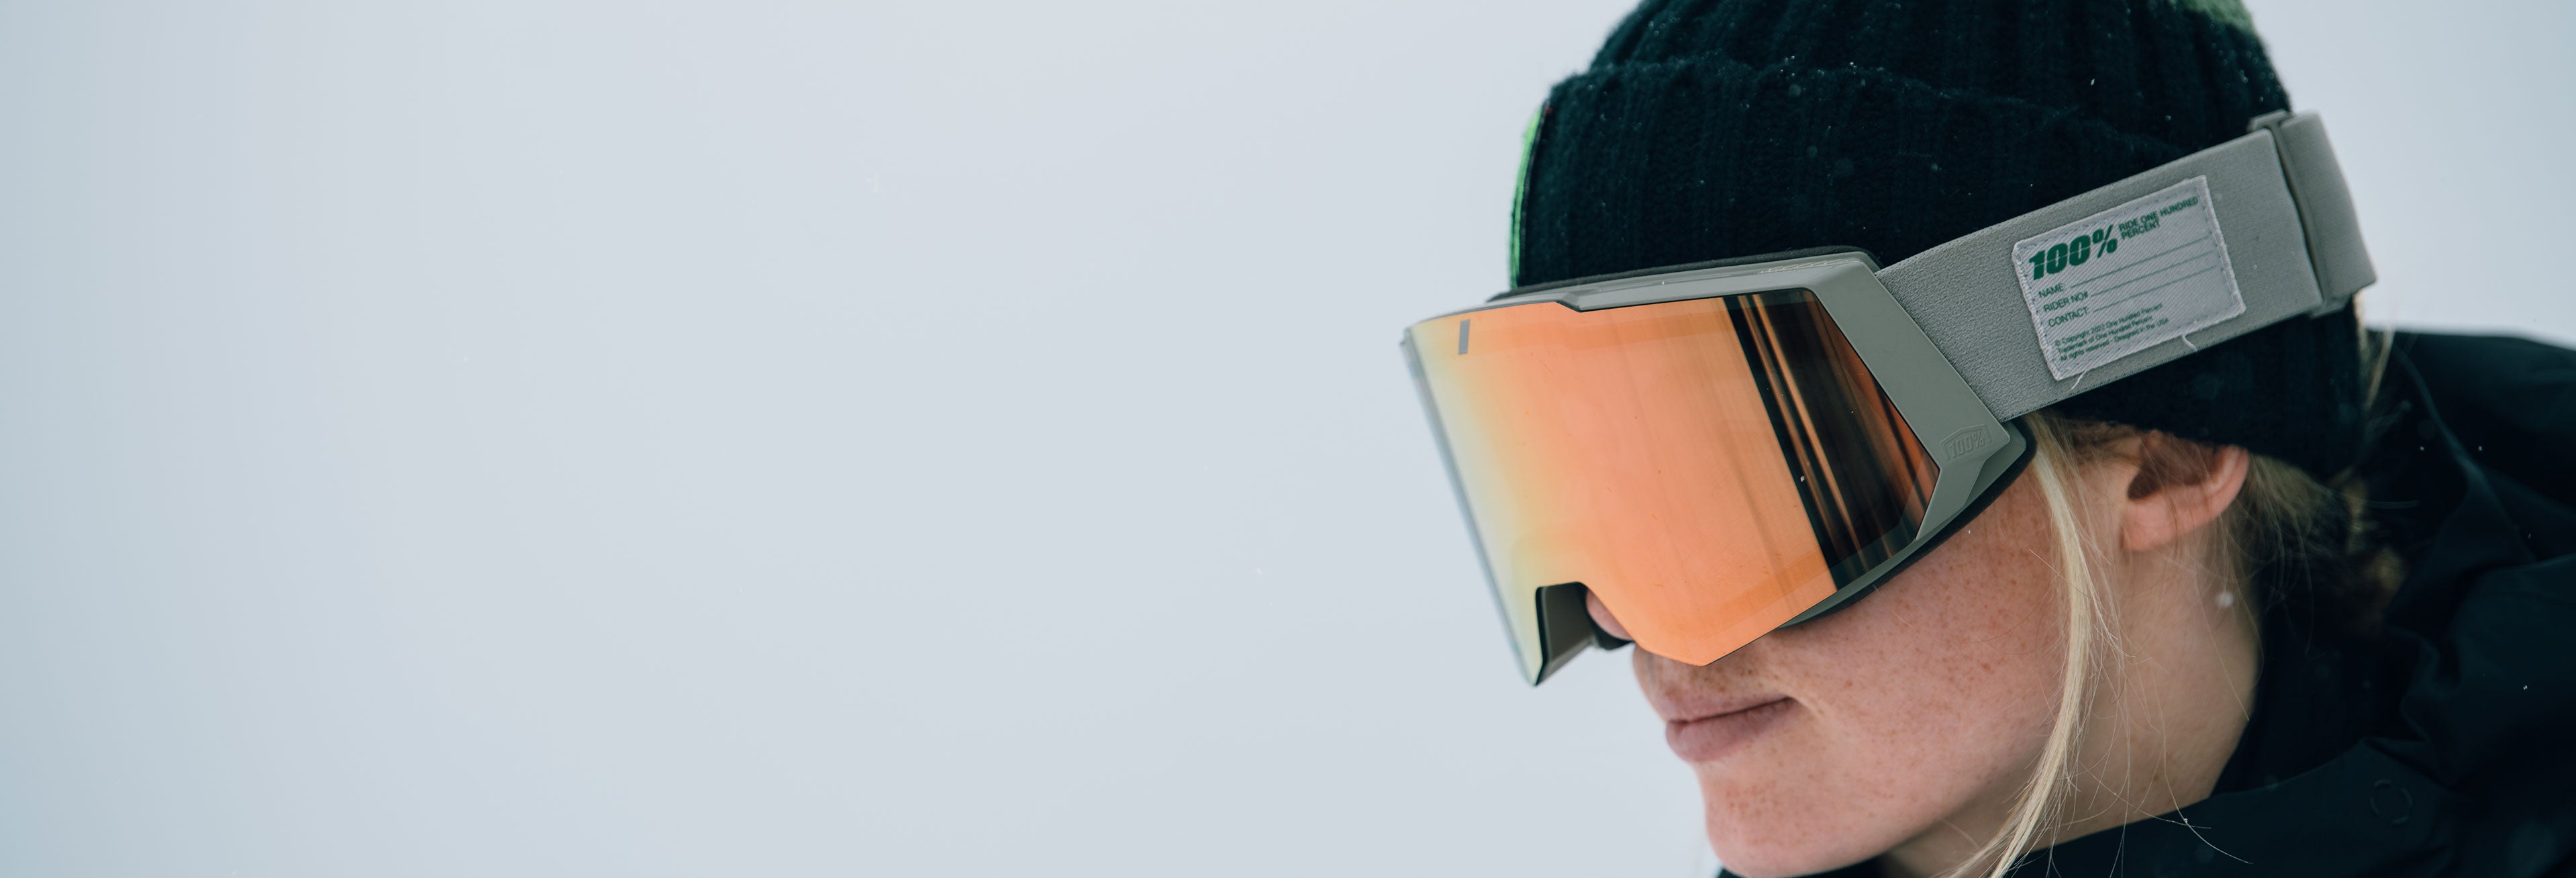 Zoi Sadowski-Synnott in 100% Snowboarding Goggles